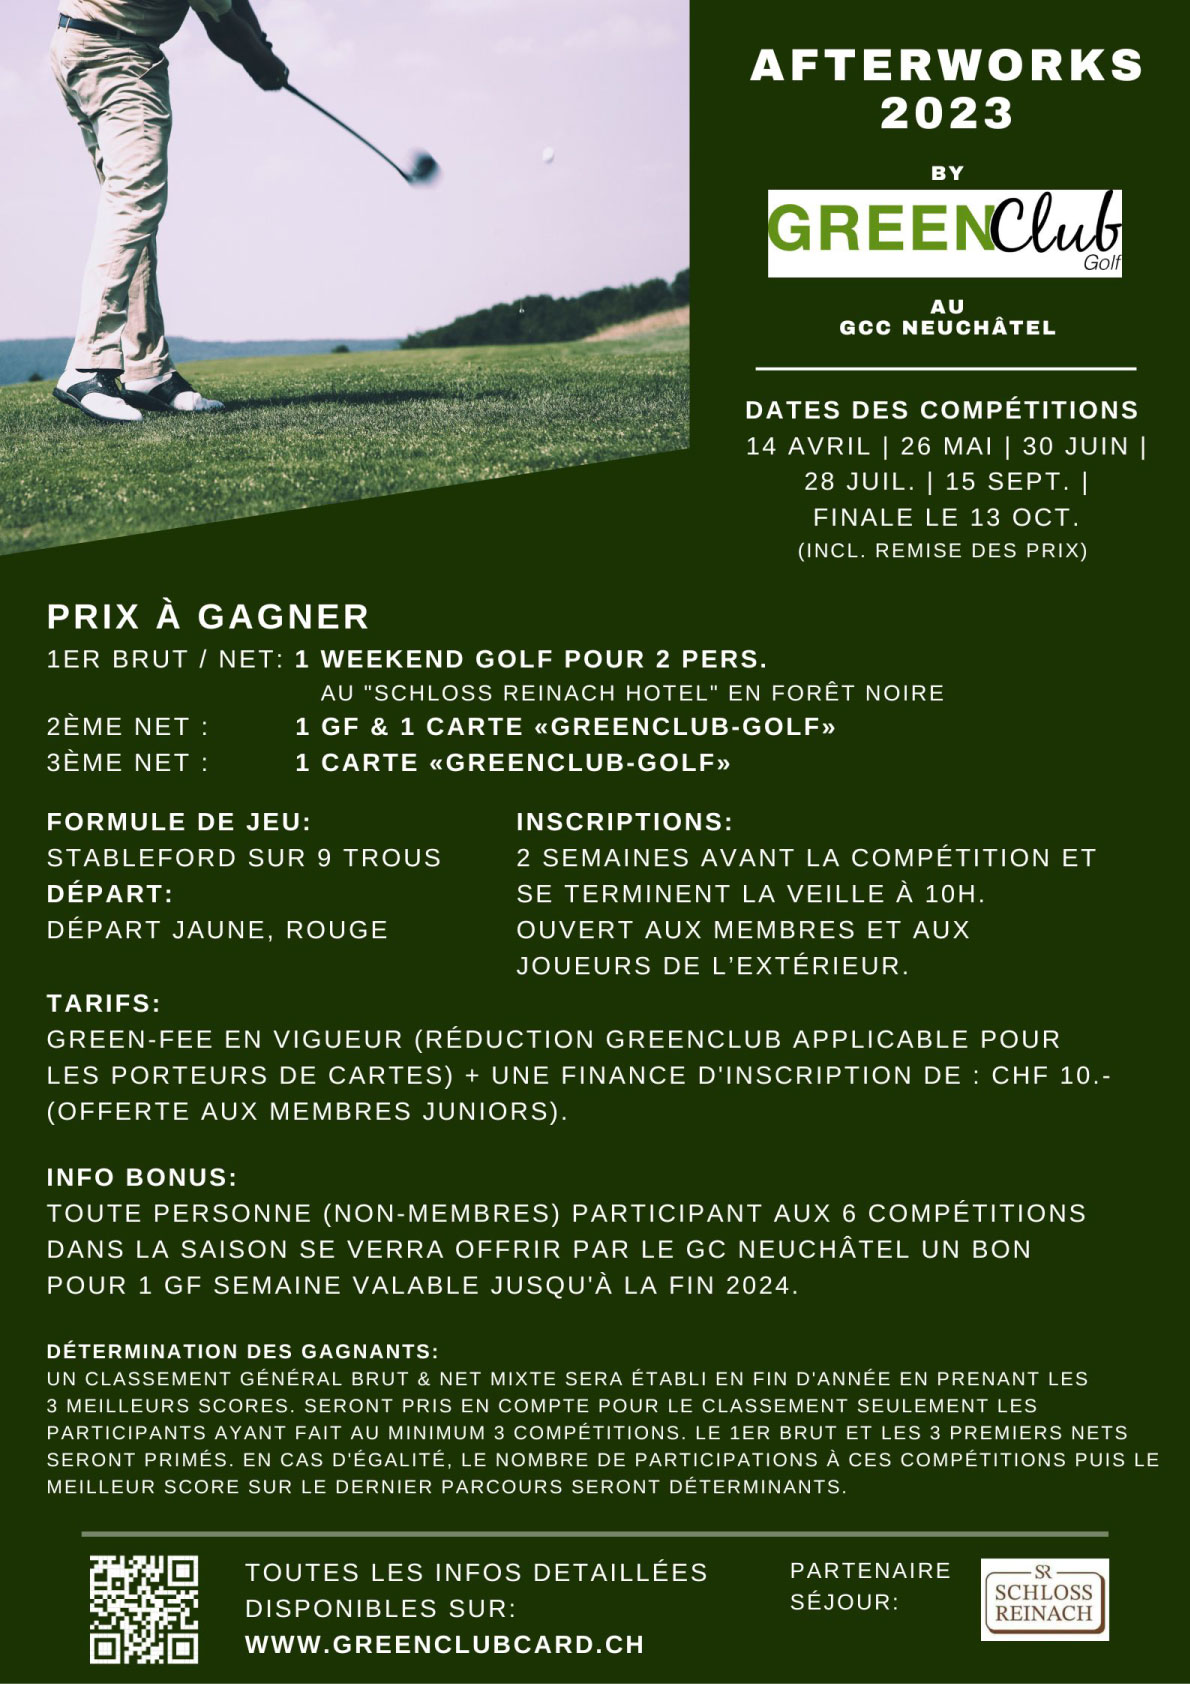 GreenClub-Golf_Afterworks-2023_GCC-Neuchâtel